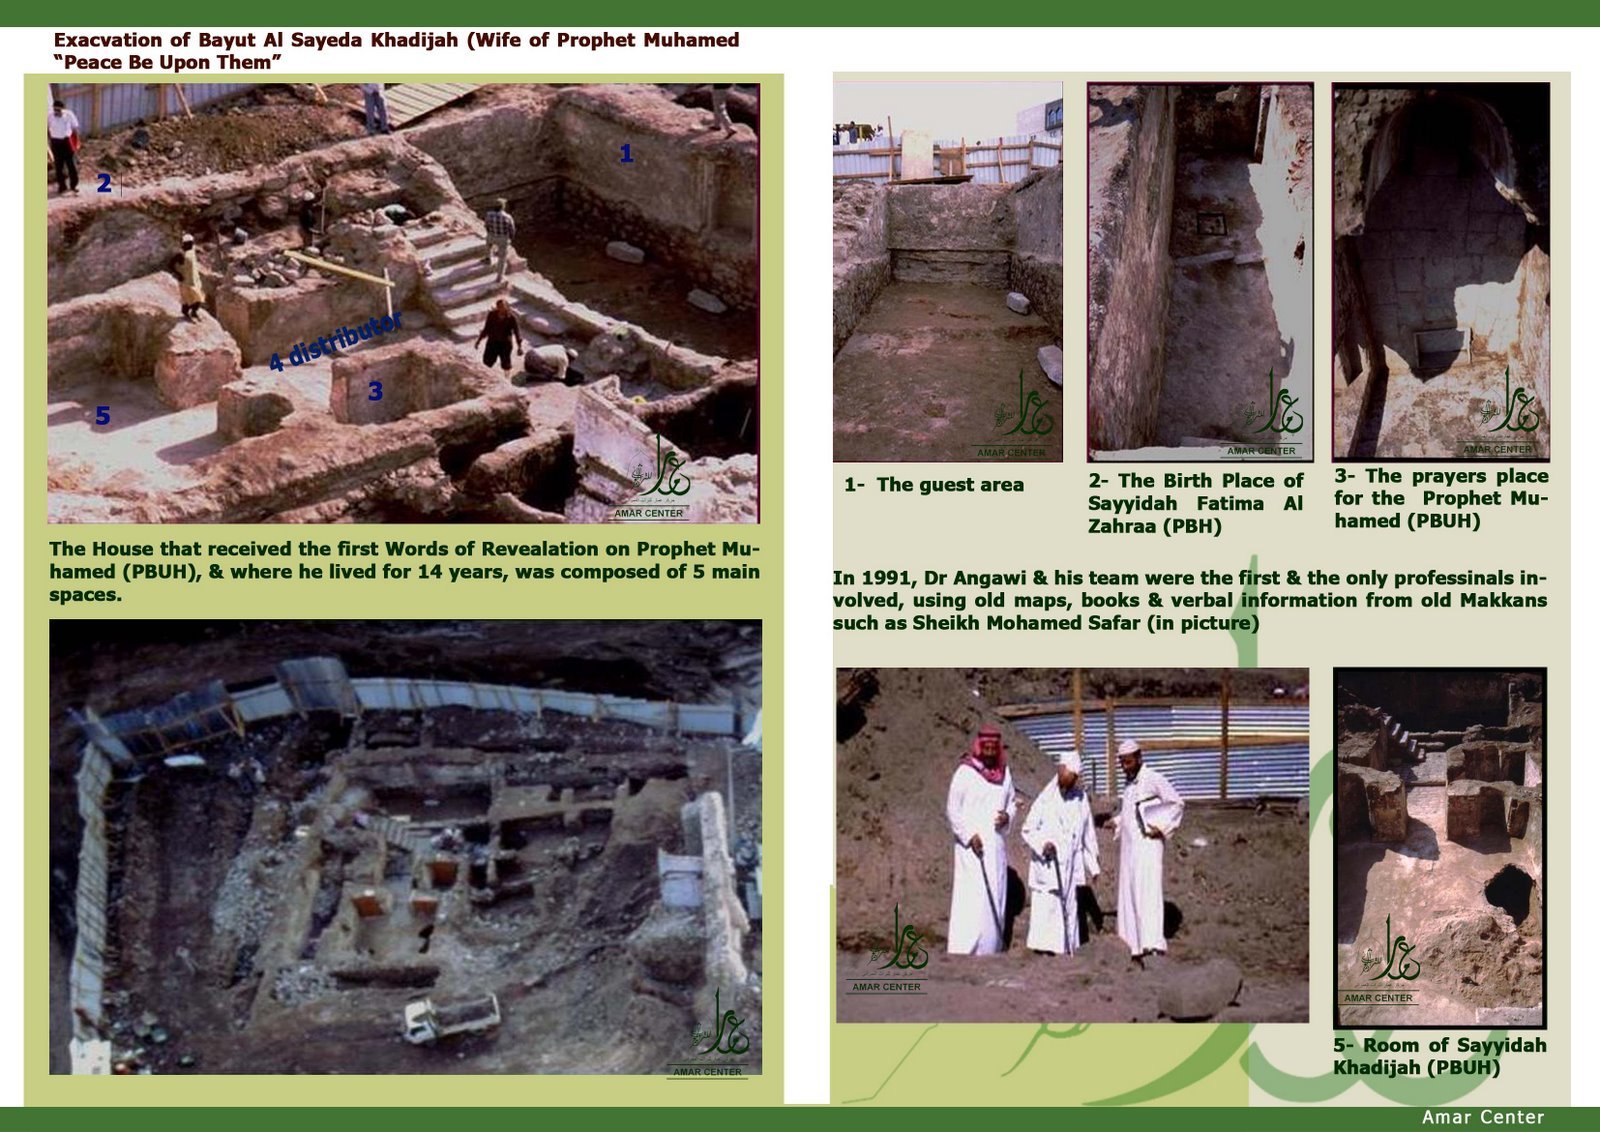 010bayutsayyedah28129 1 - Historical Places in Makkah Al-Mukarramah